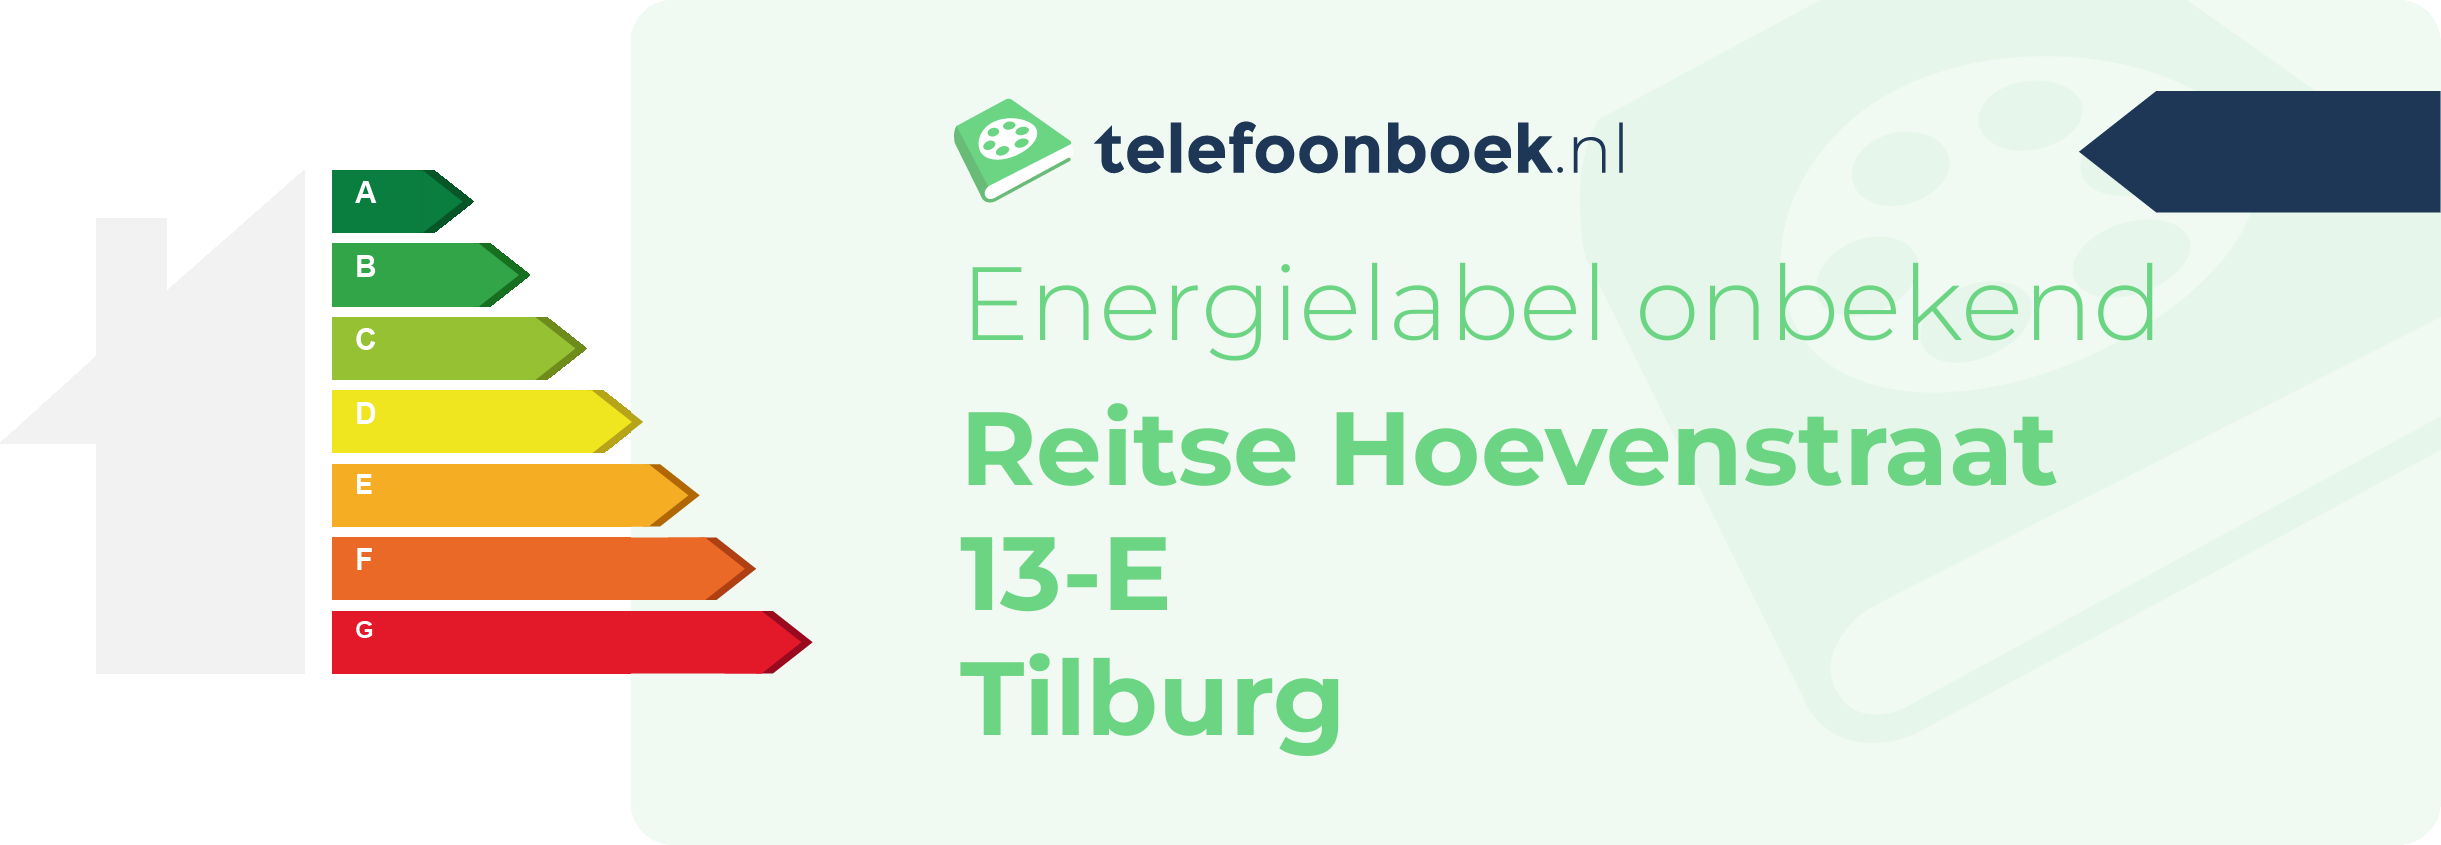 Energielabel Reitse Hoevenstraat 13-E Tilburg